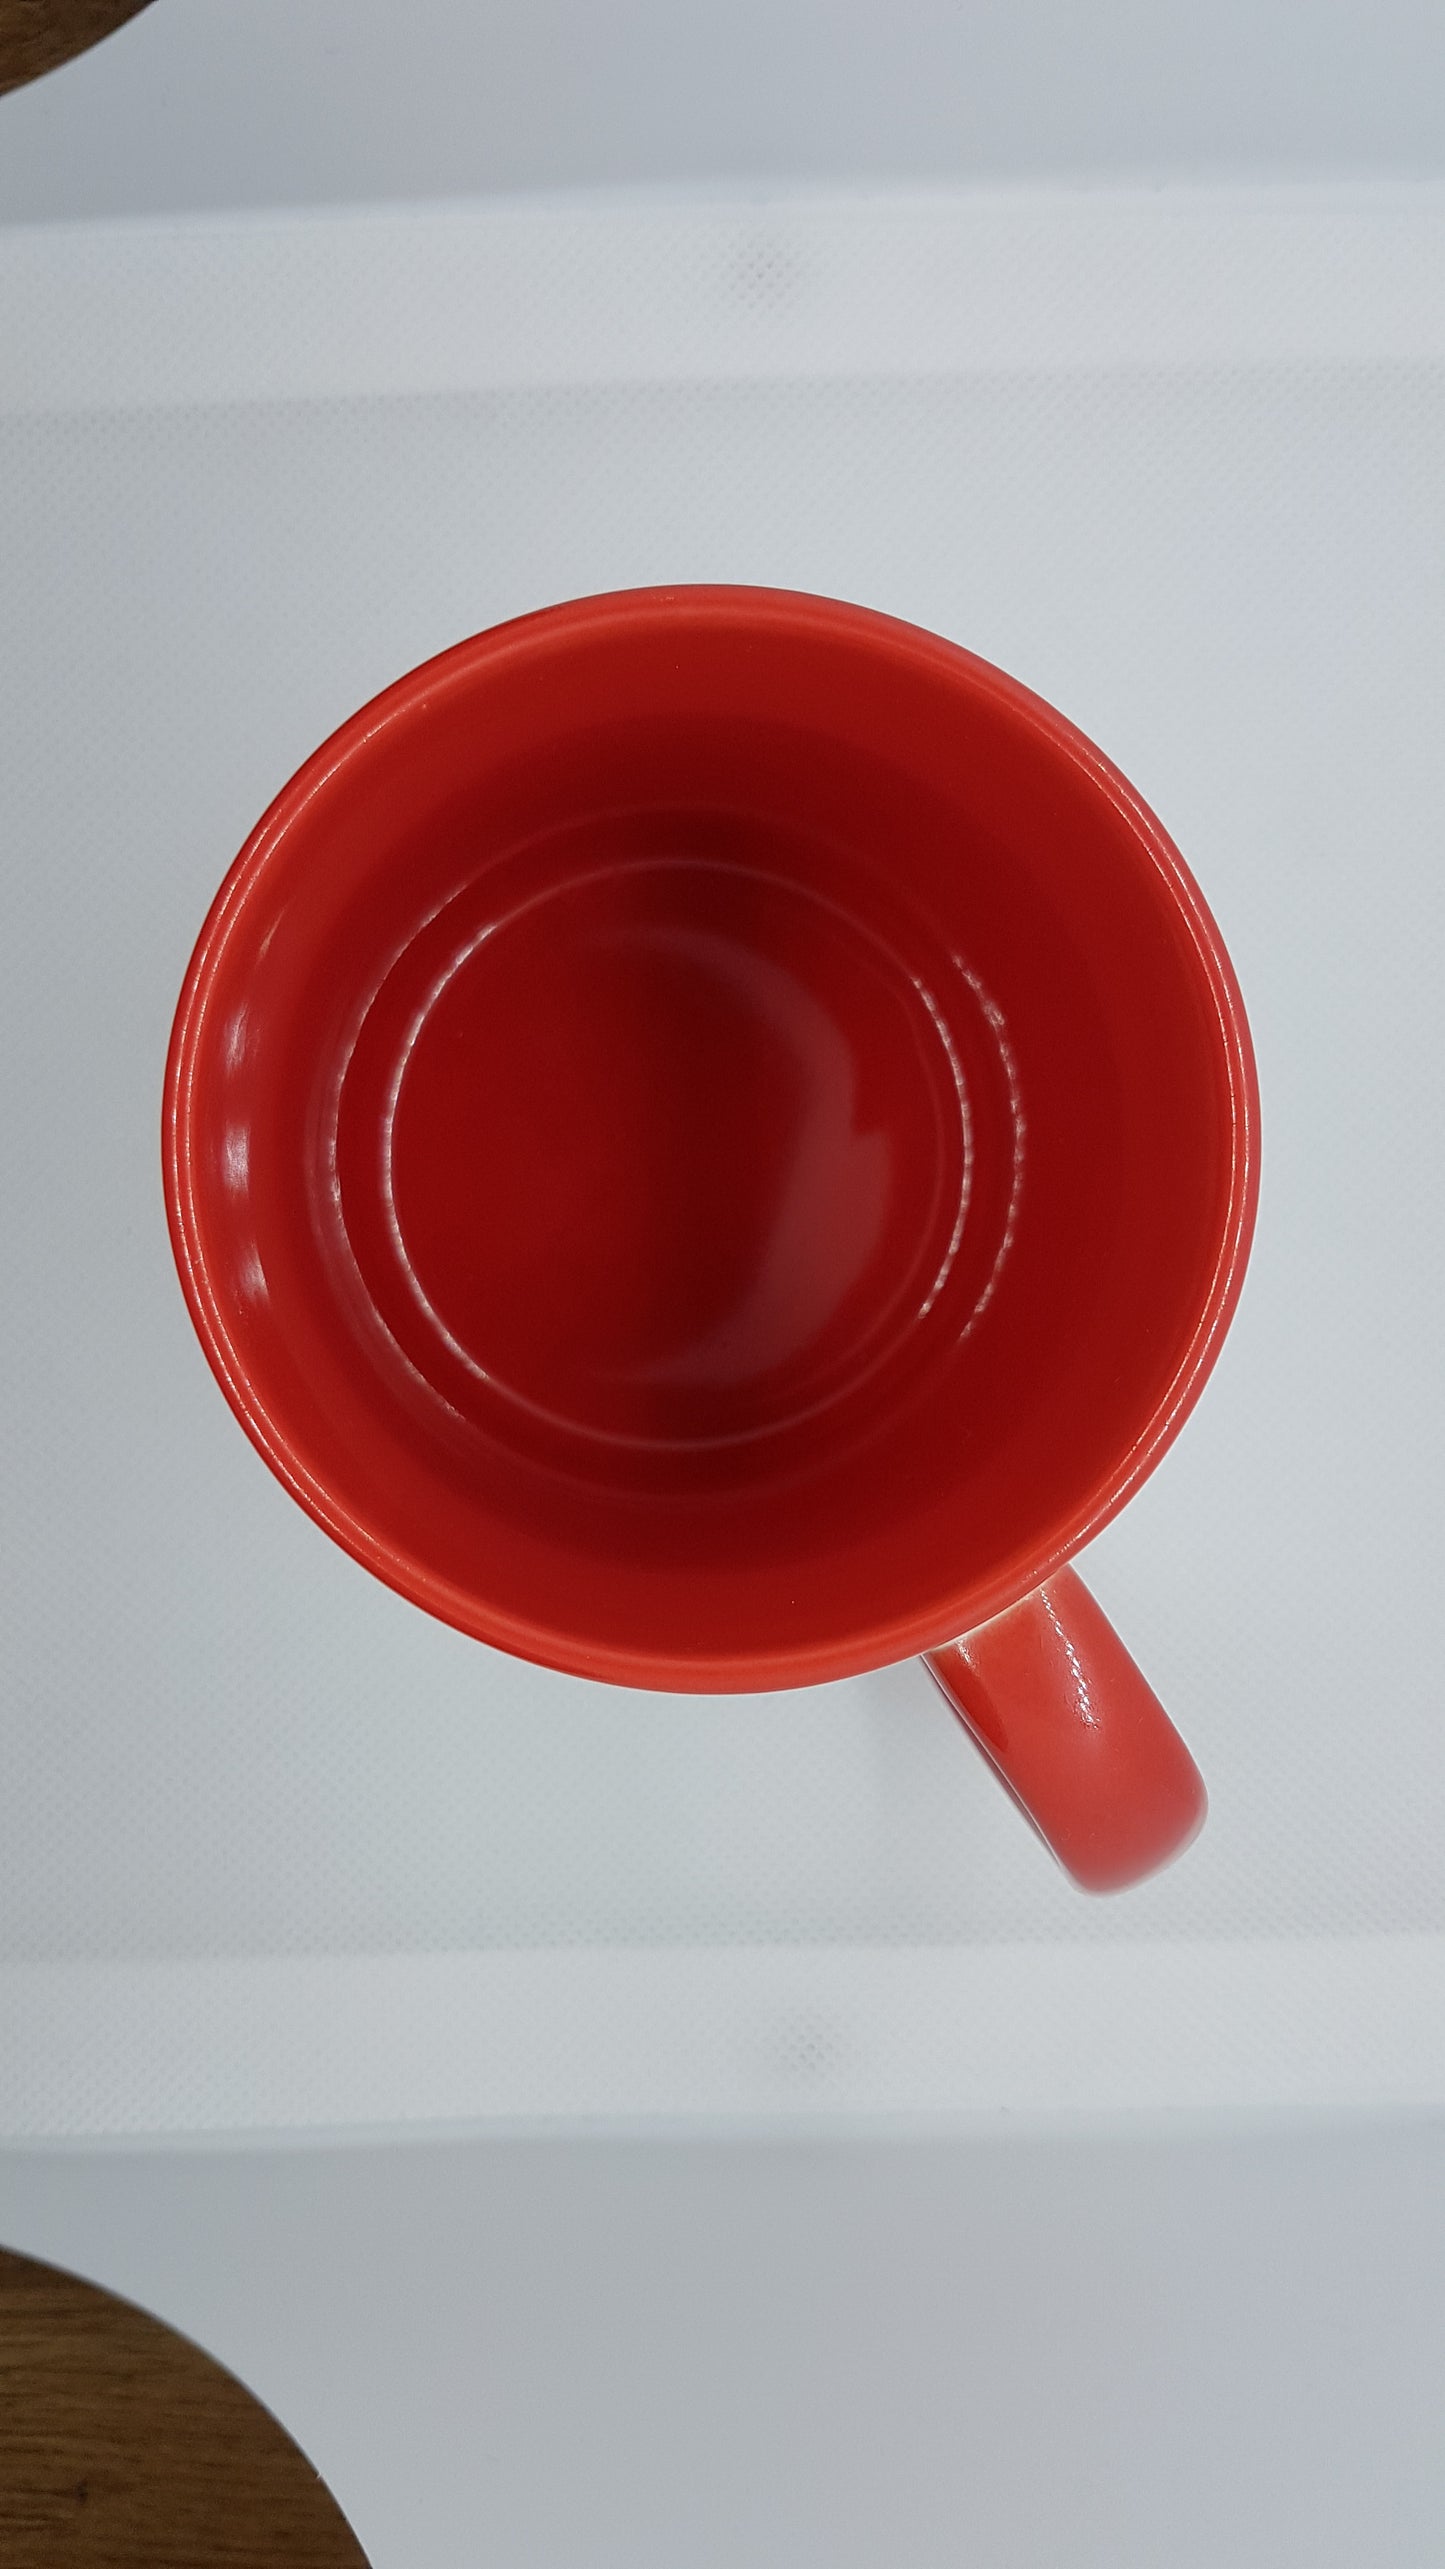 Højkvalitets kop - med farvet hank tilgængelig fra SZ-Folien